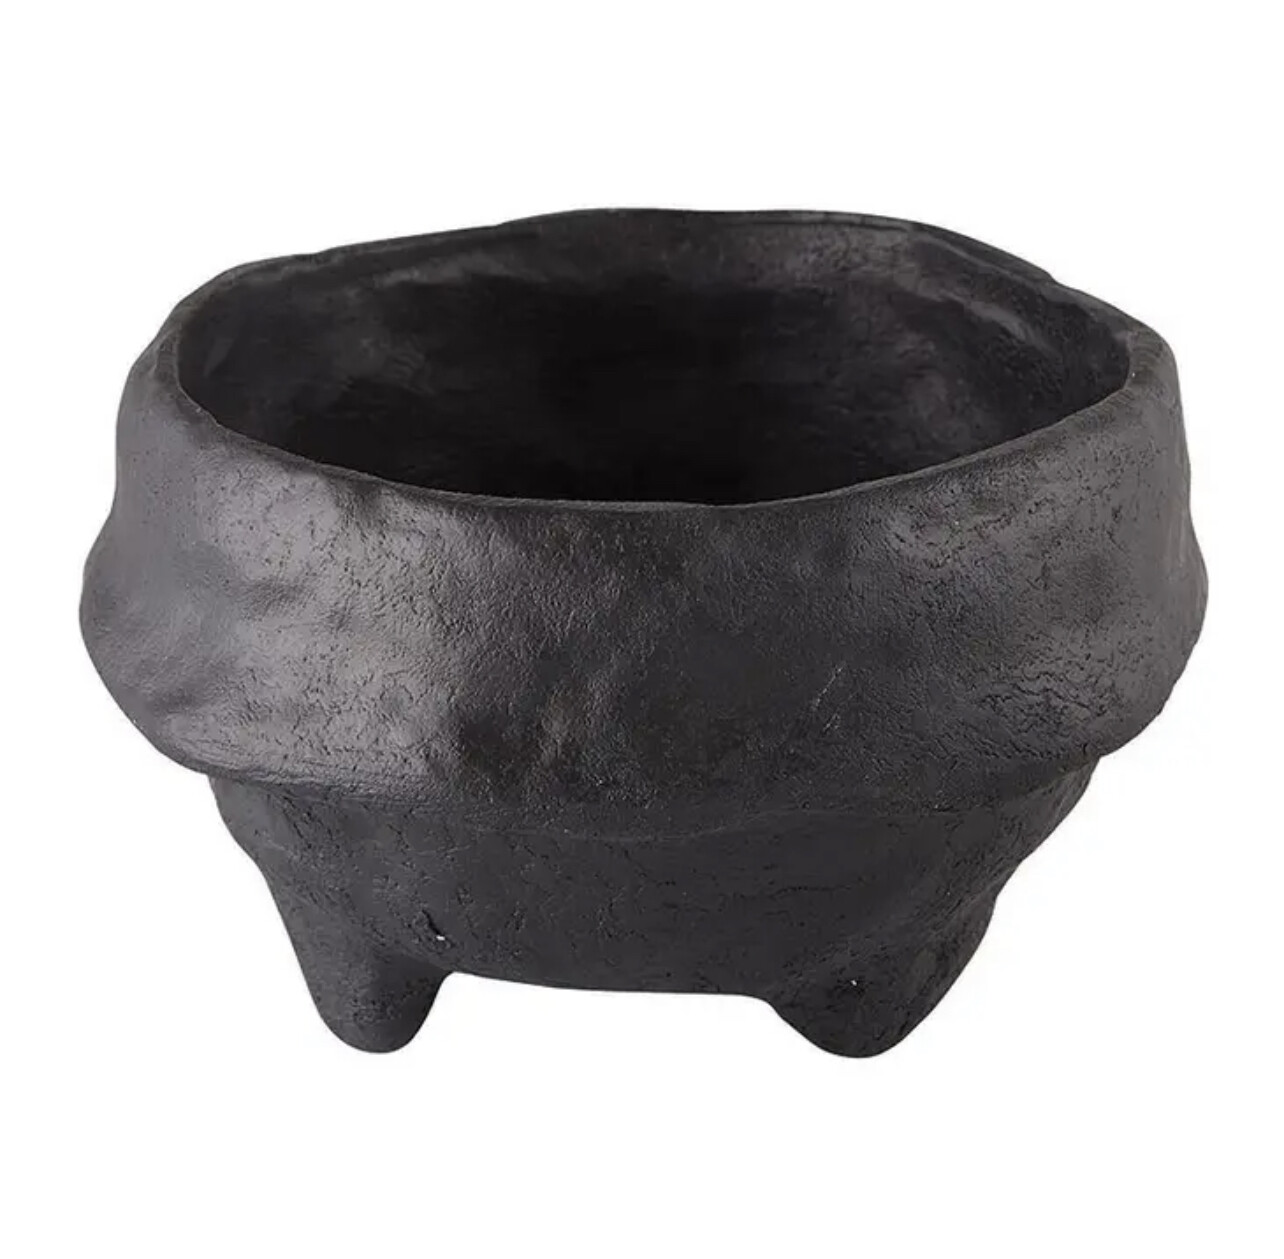 Paper Mache Bowl - Small Black